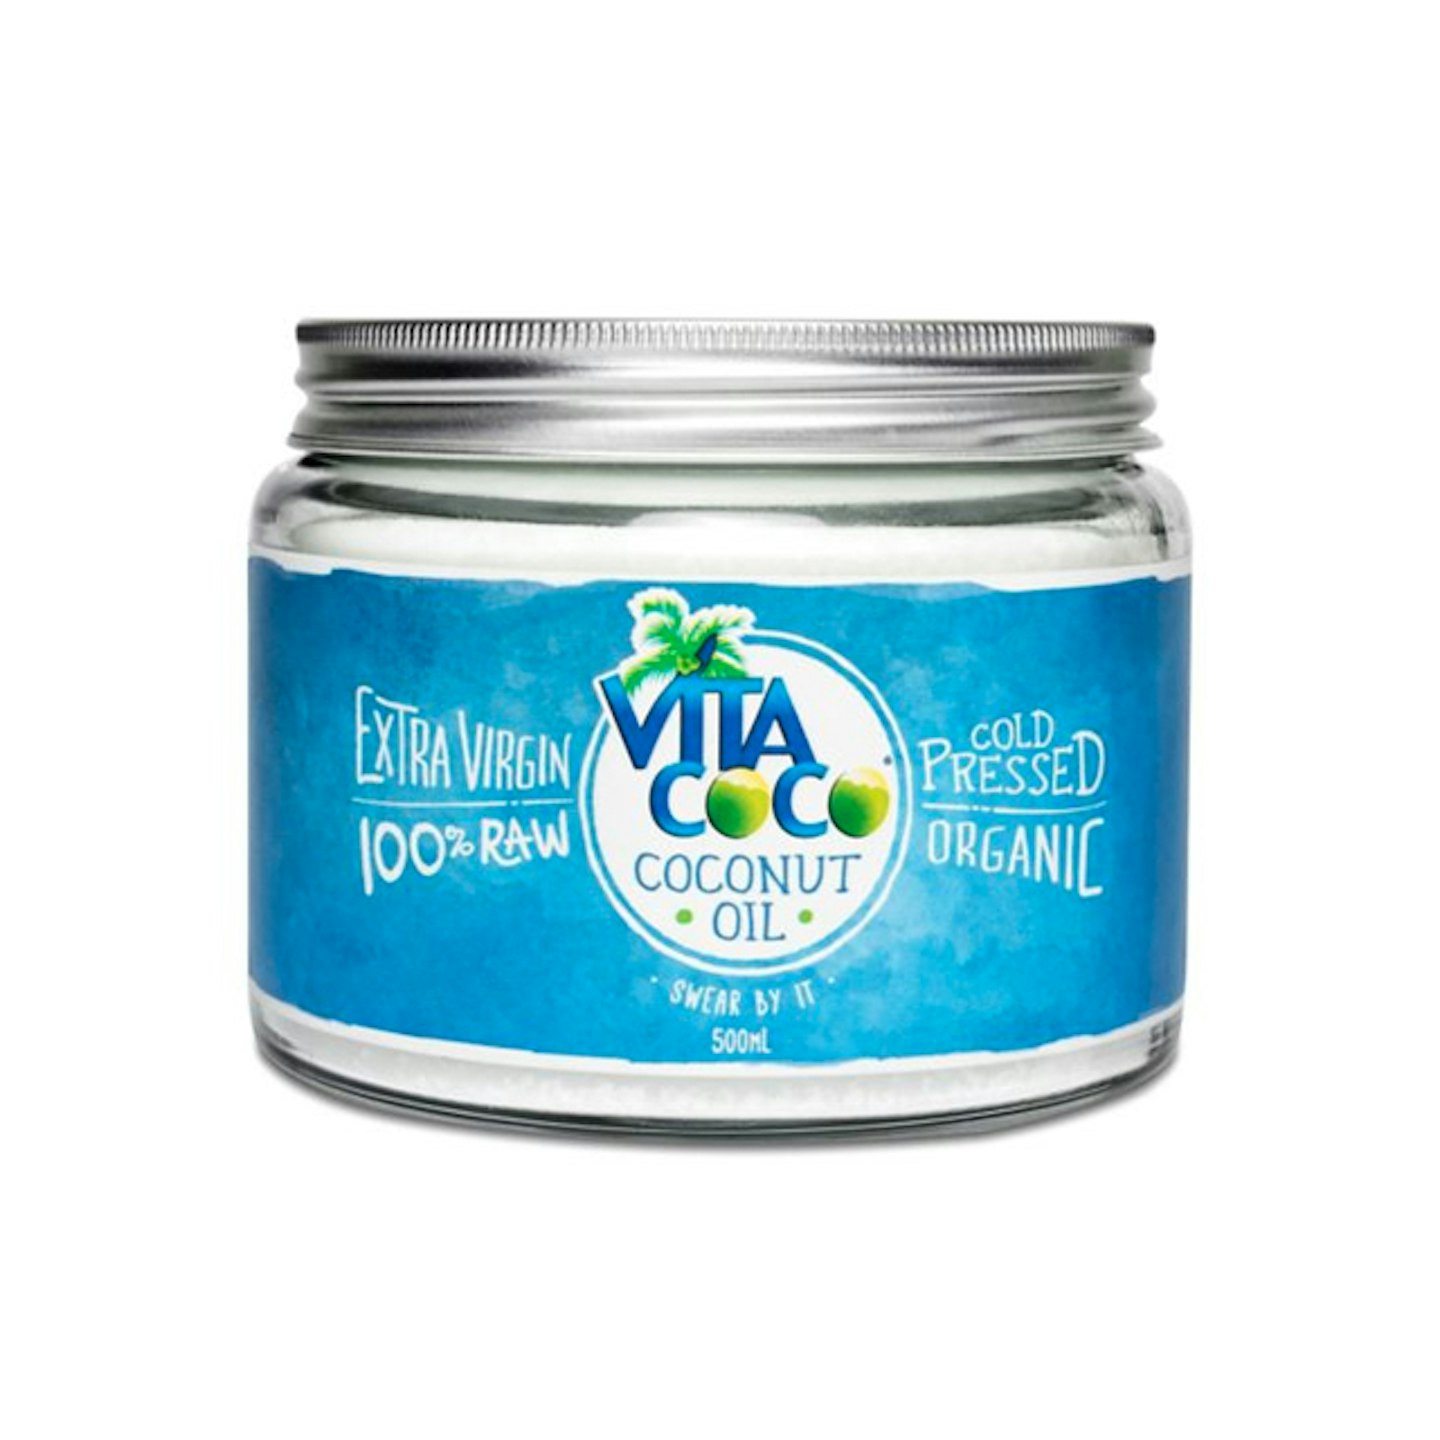 Vita Coco's Coconut Oil, £9.99